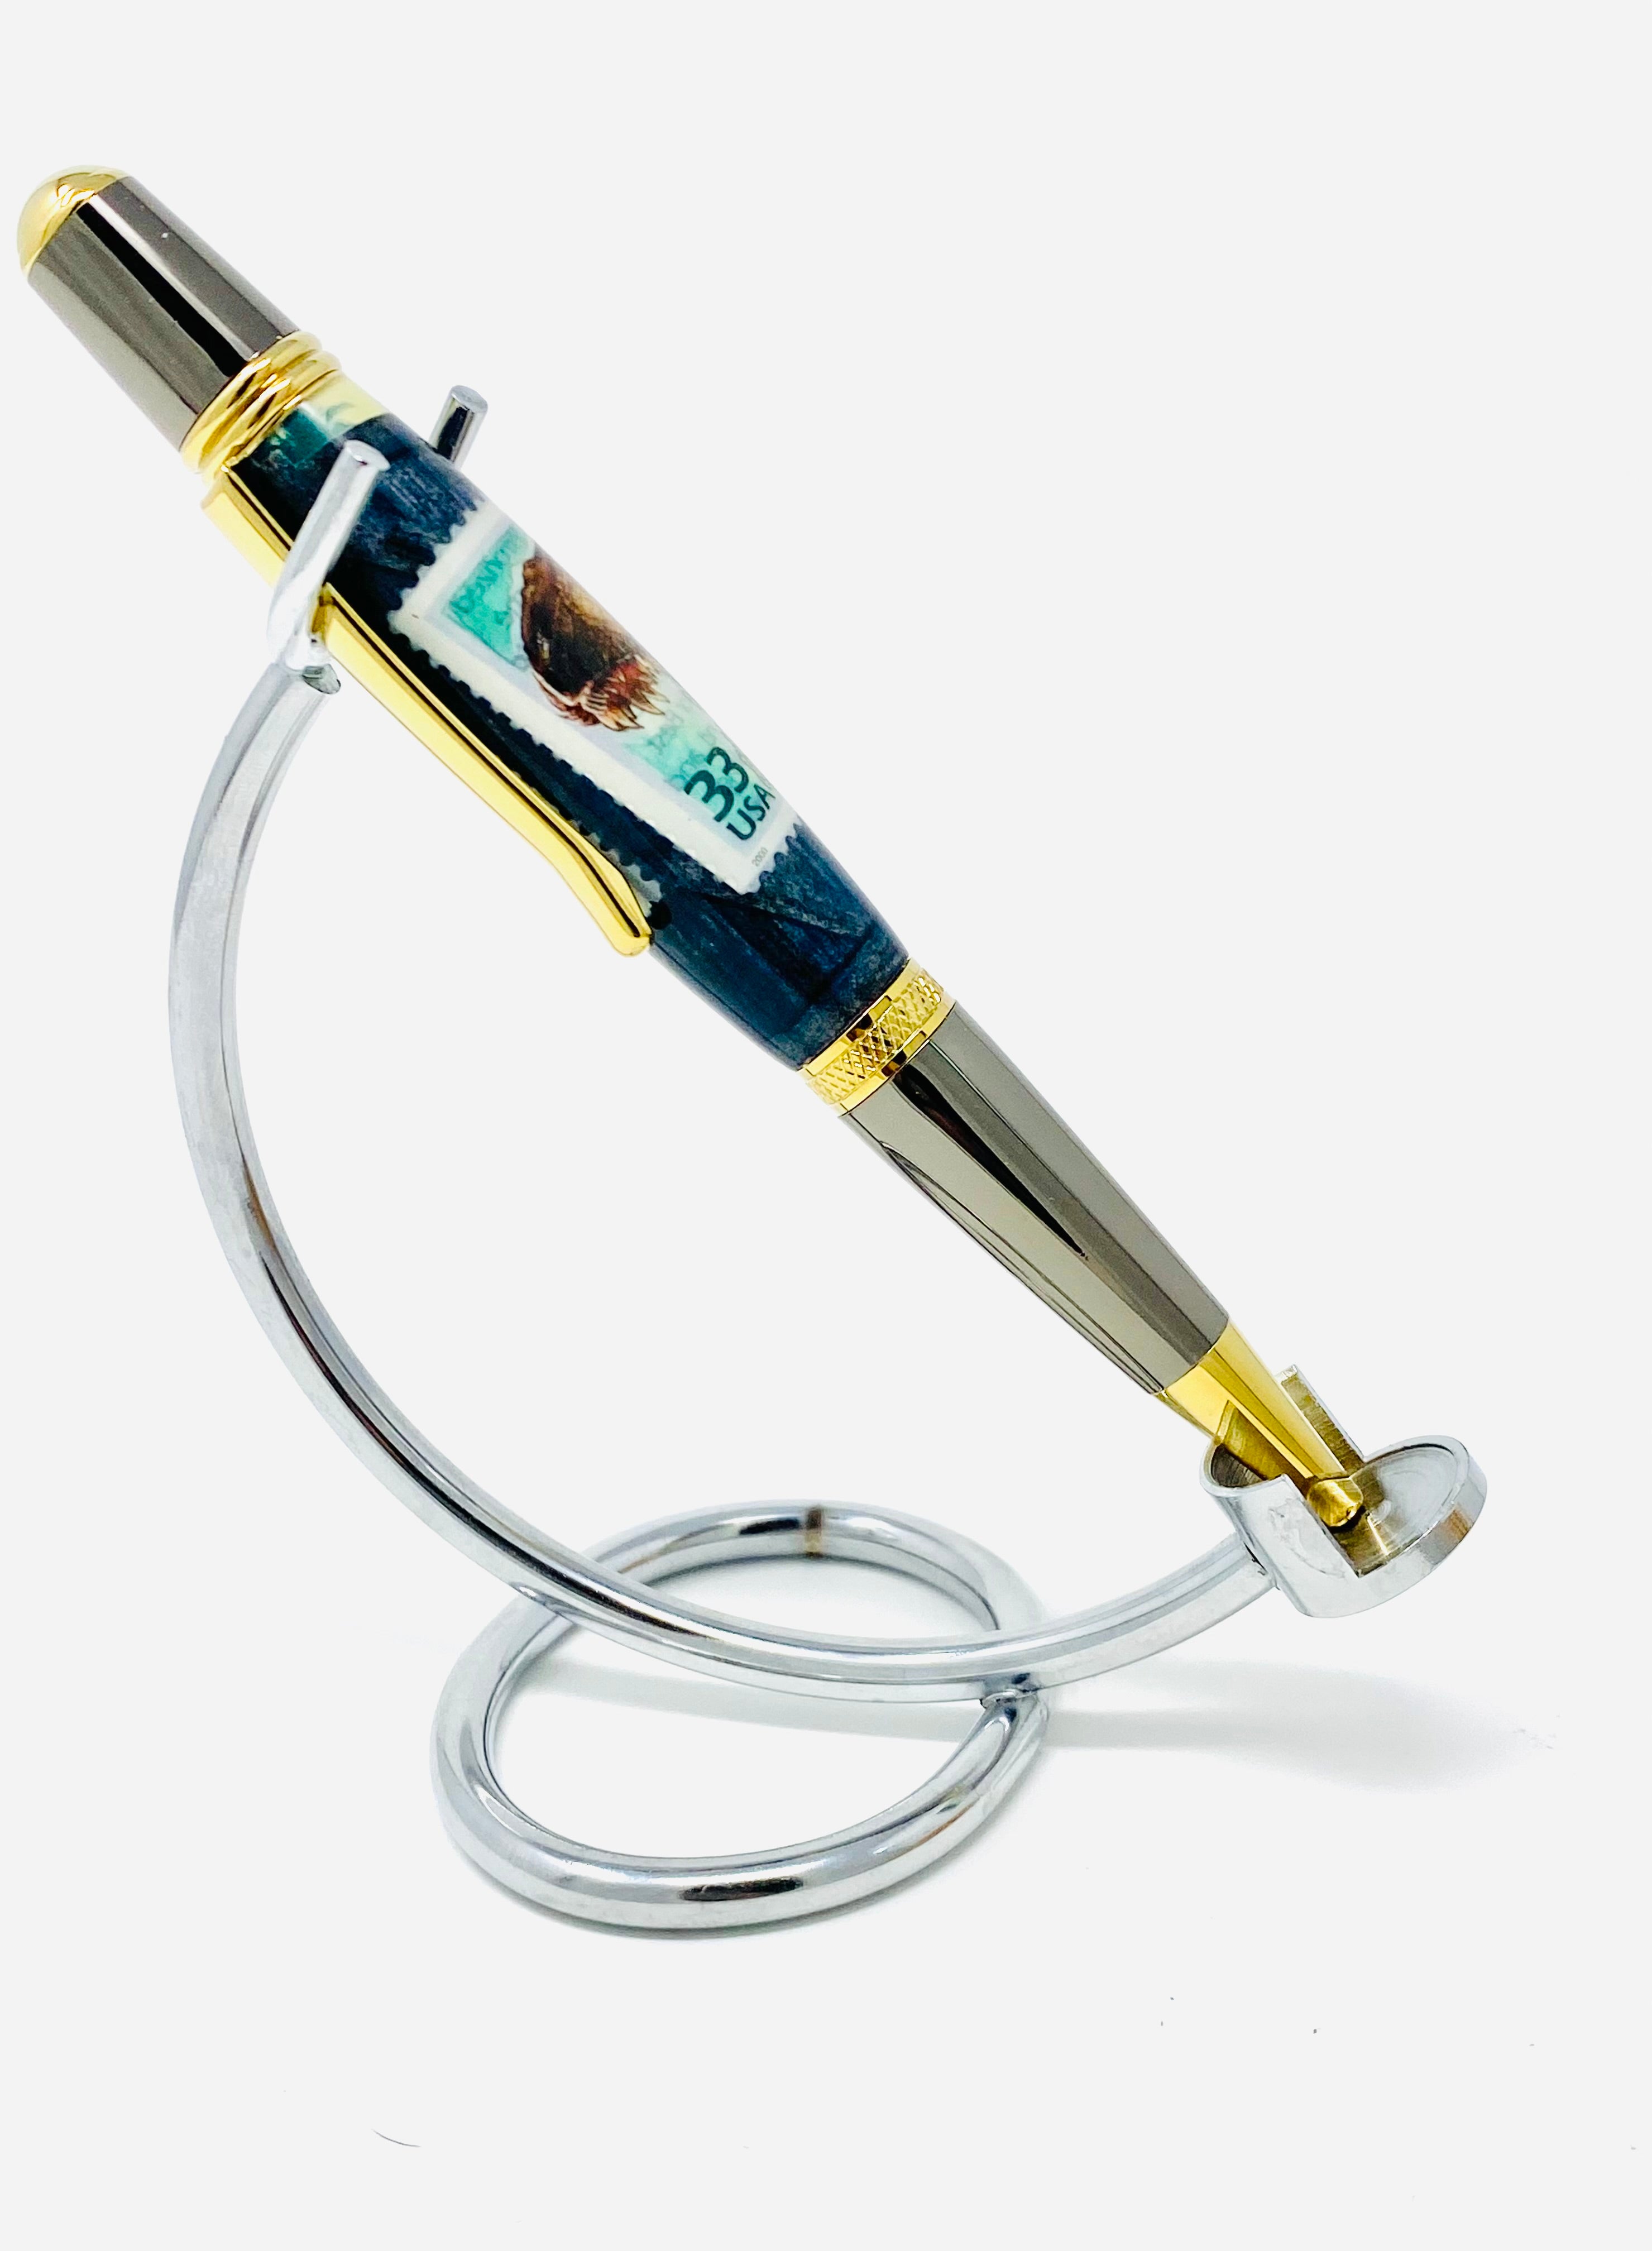 Jurassic Park Themed pen